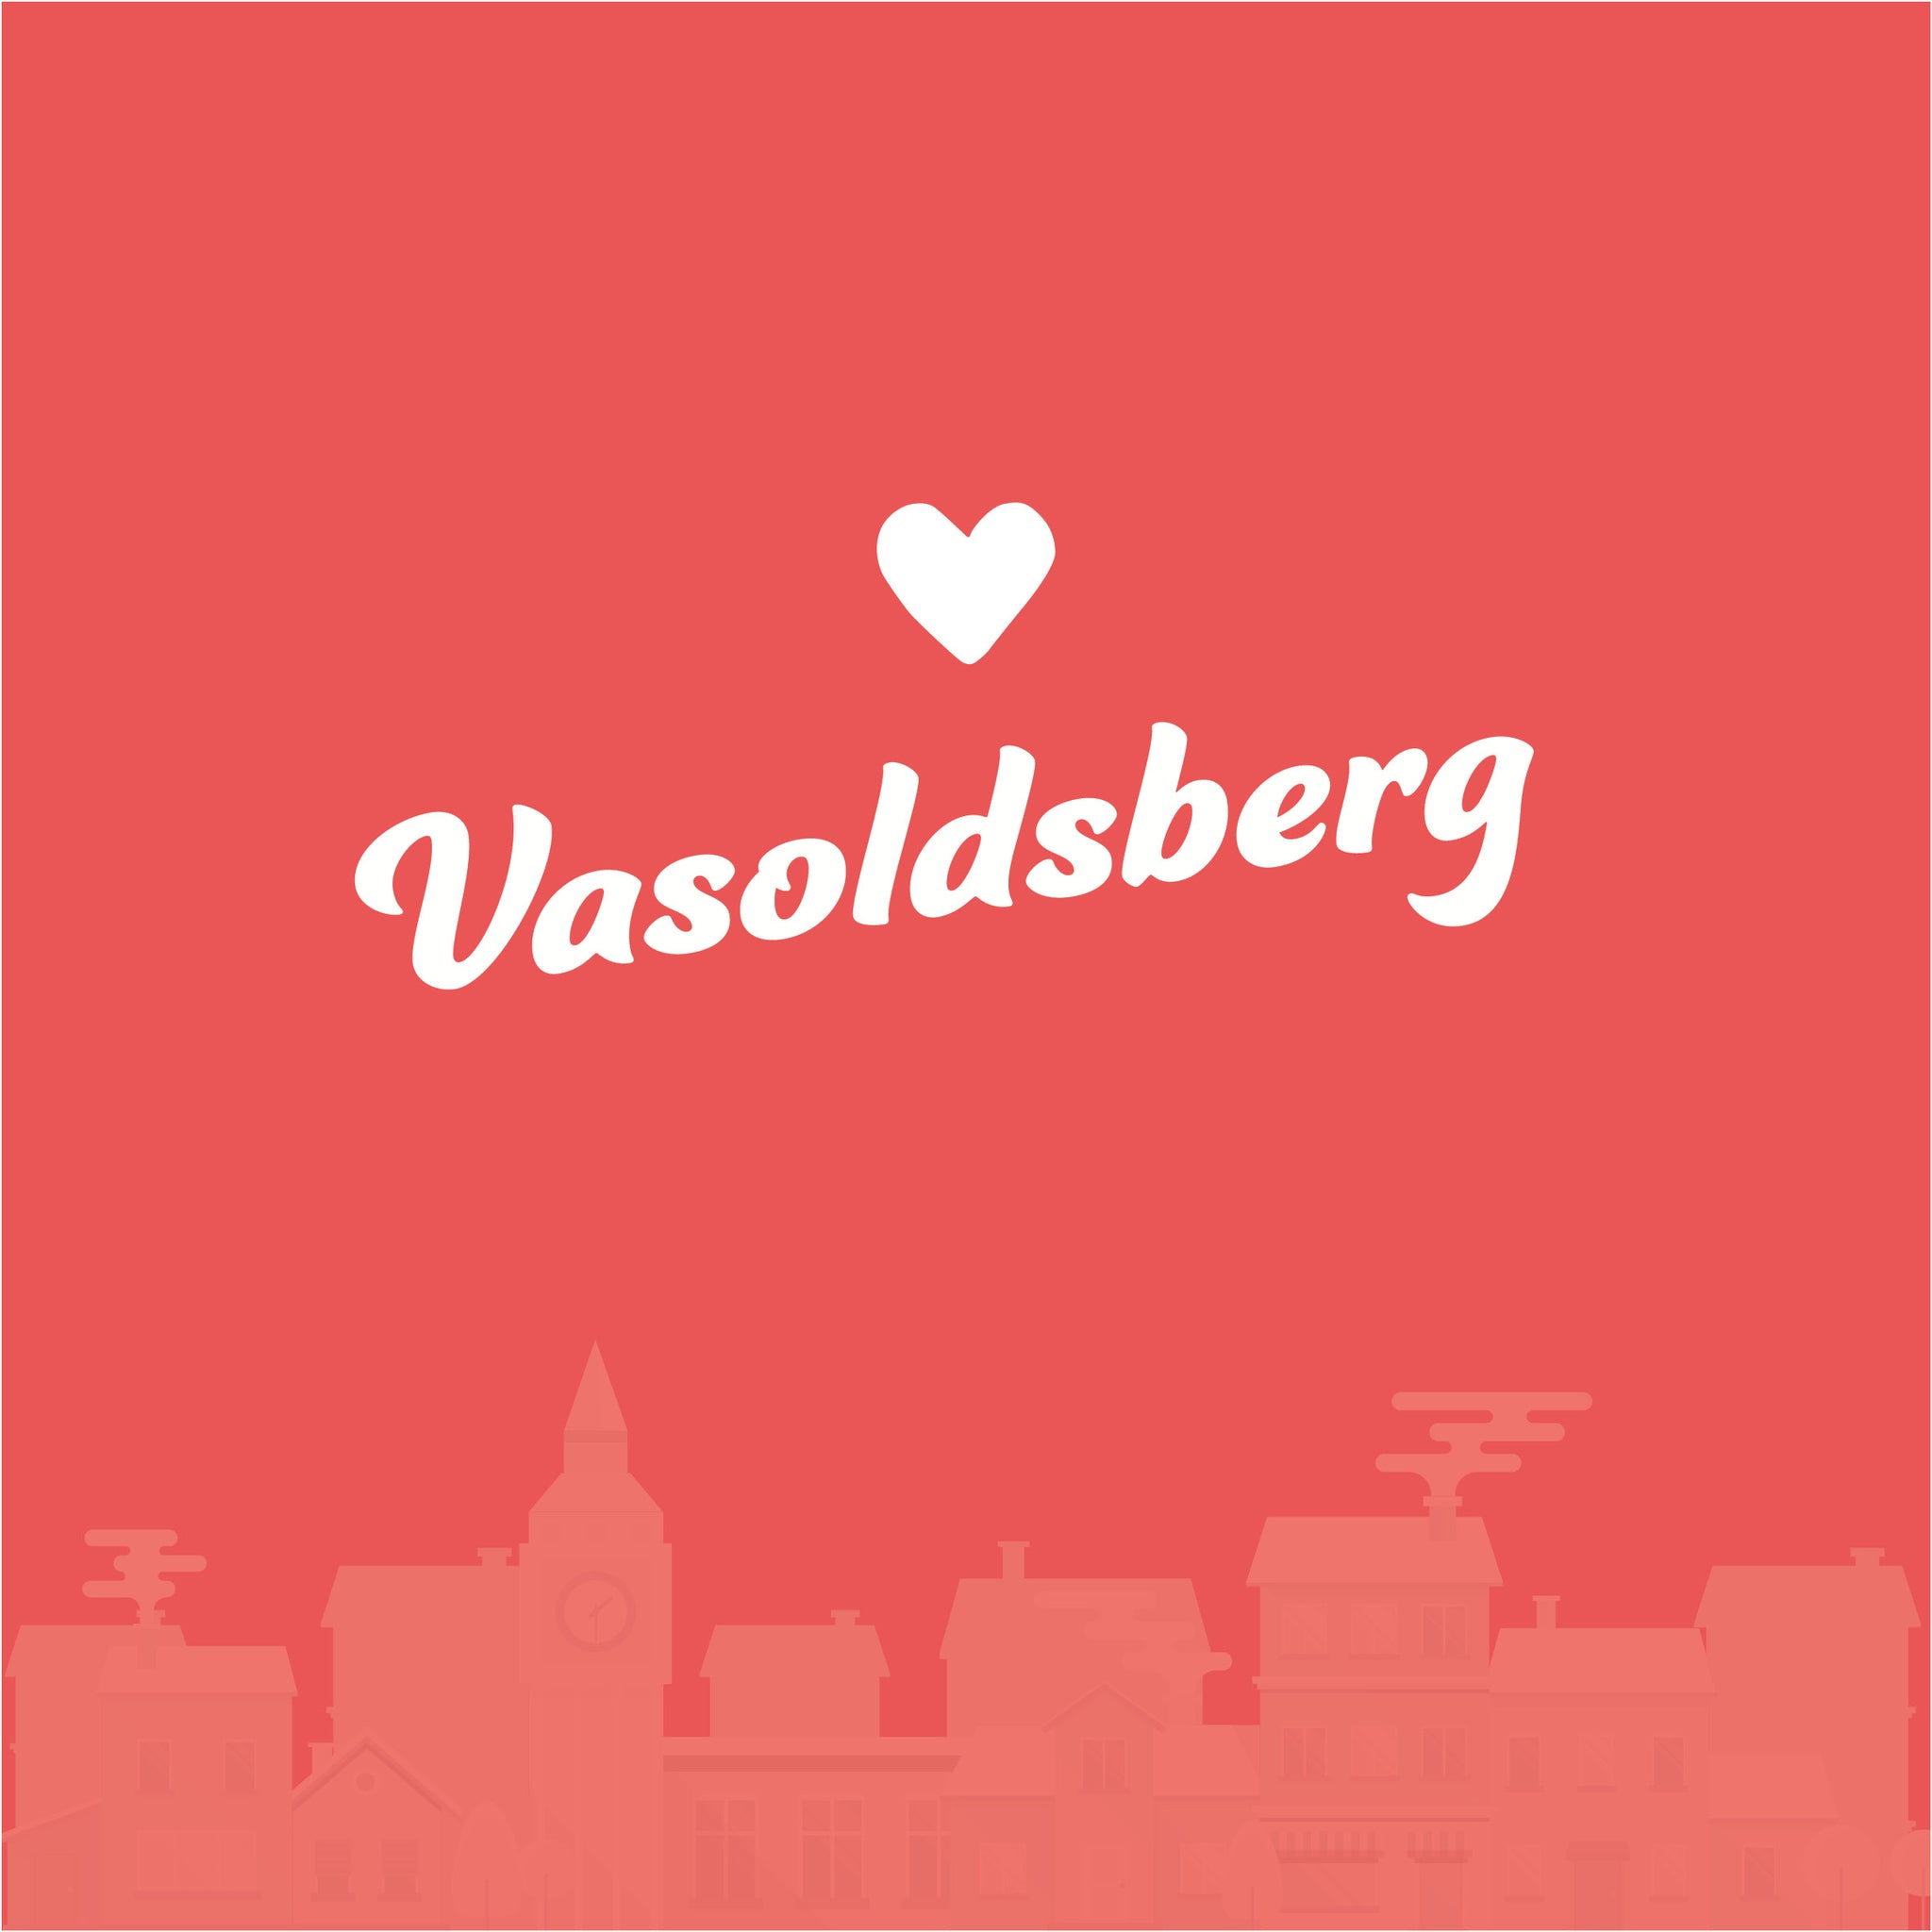 Vasoldsberg